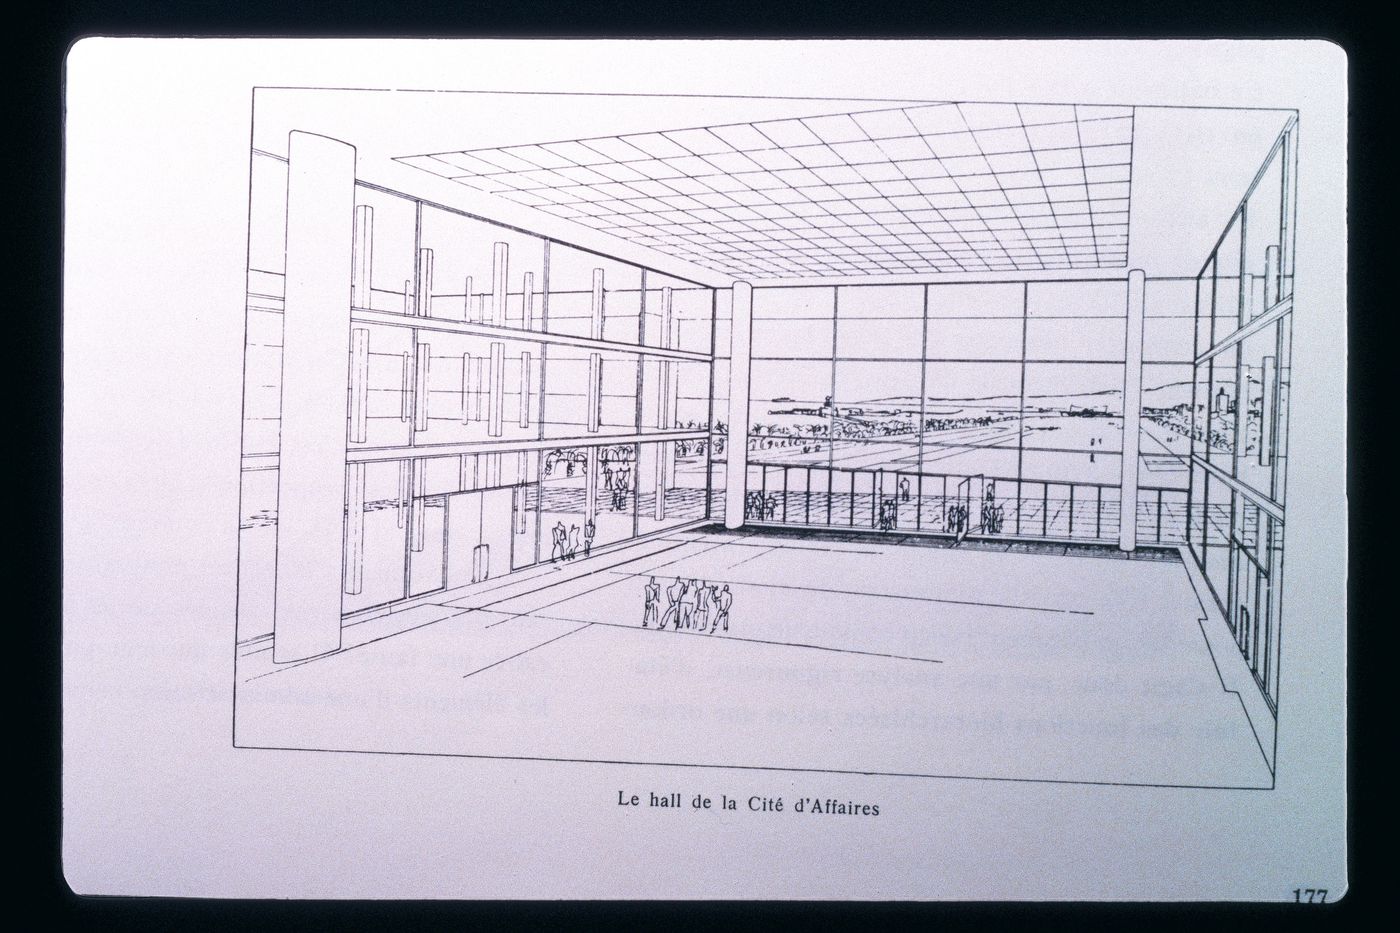 Slide of a drawing for Cité d'Affaires, Algiers, by Le Corbusier